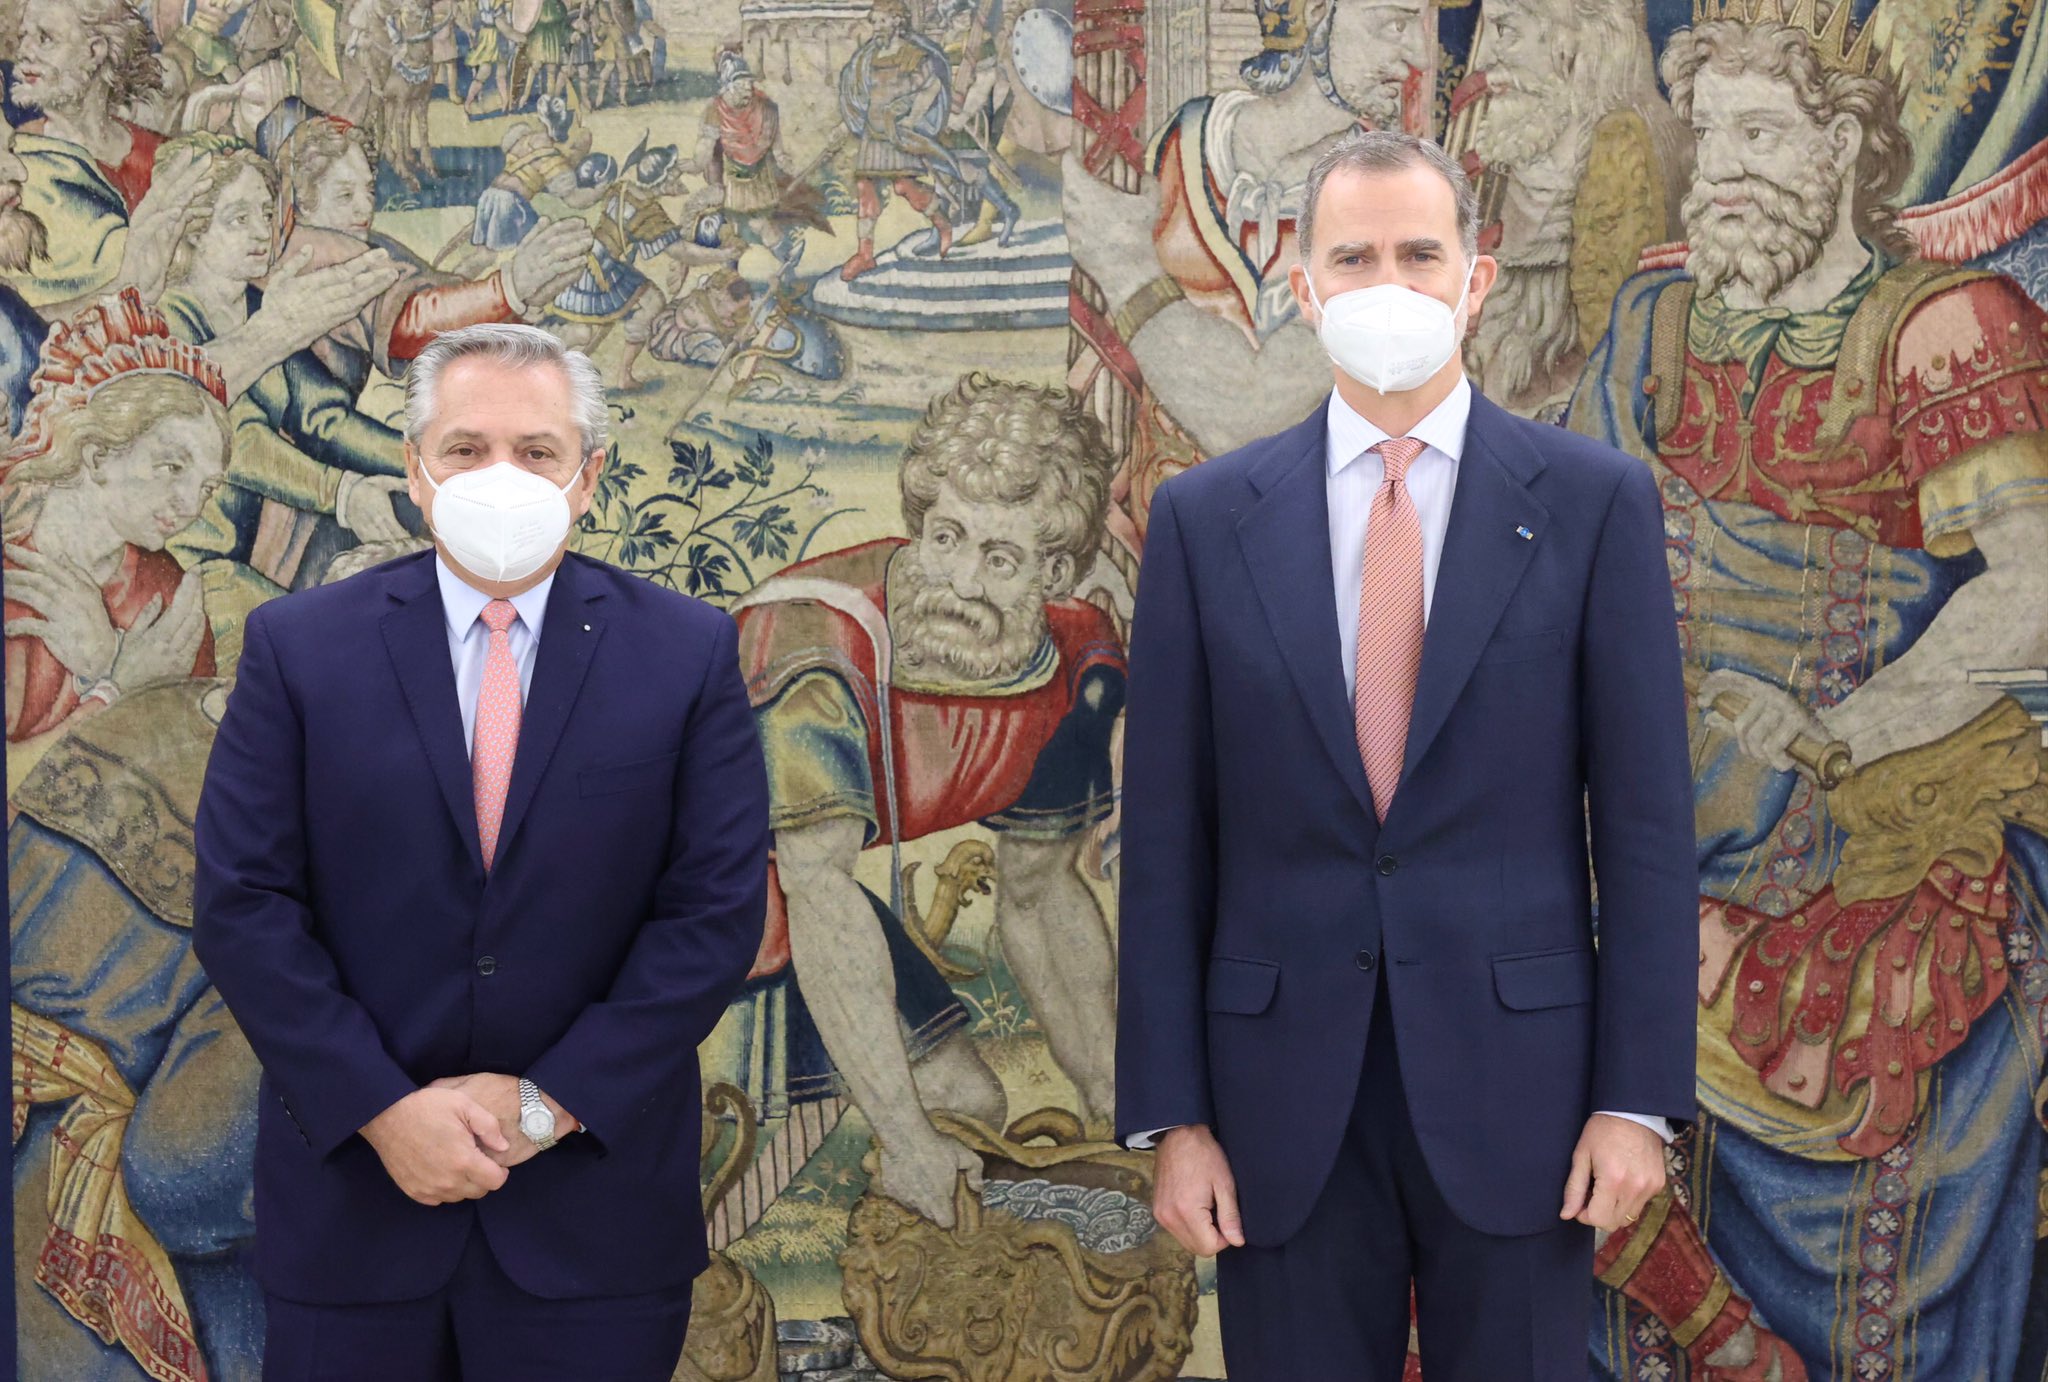 Esta es una de las fotos del encuentro de hoy entre el presidente Alberto Fernández y el rey Felipe VI. (Gentileza).-